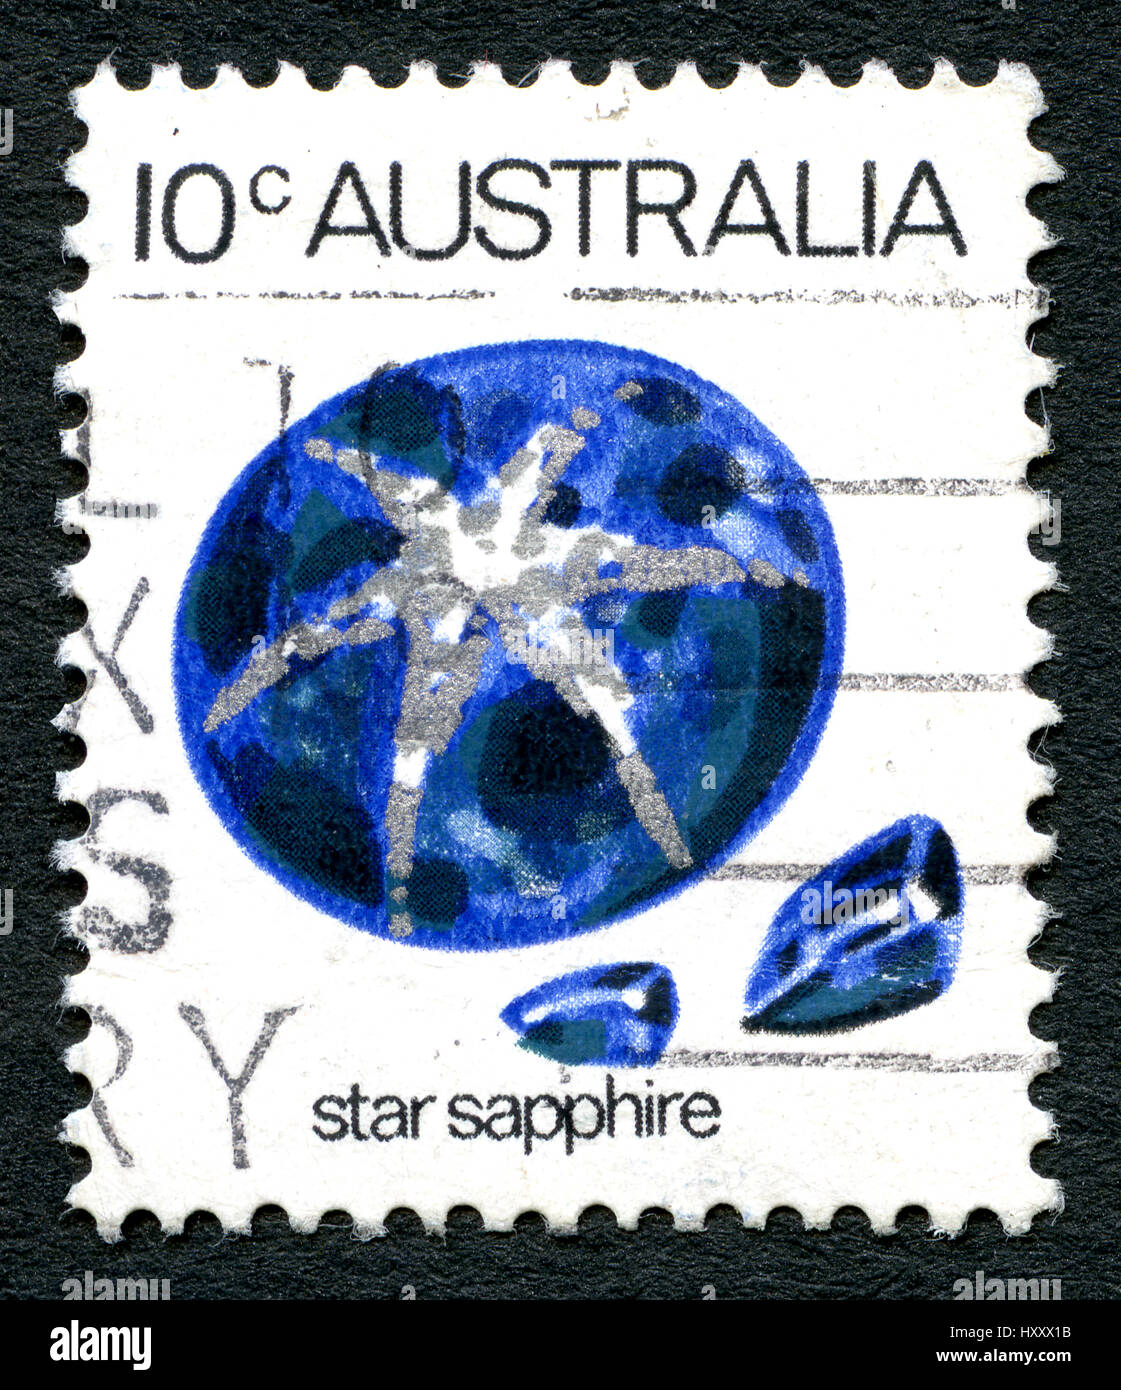 Australie - VERS 1973 : un timbre-poste utilisé à partir de l'Australie, représentant une illustration d'une pierre précieuse Saphir Étoile, vers 1973. Banque D'Images